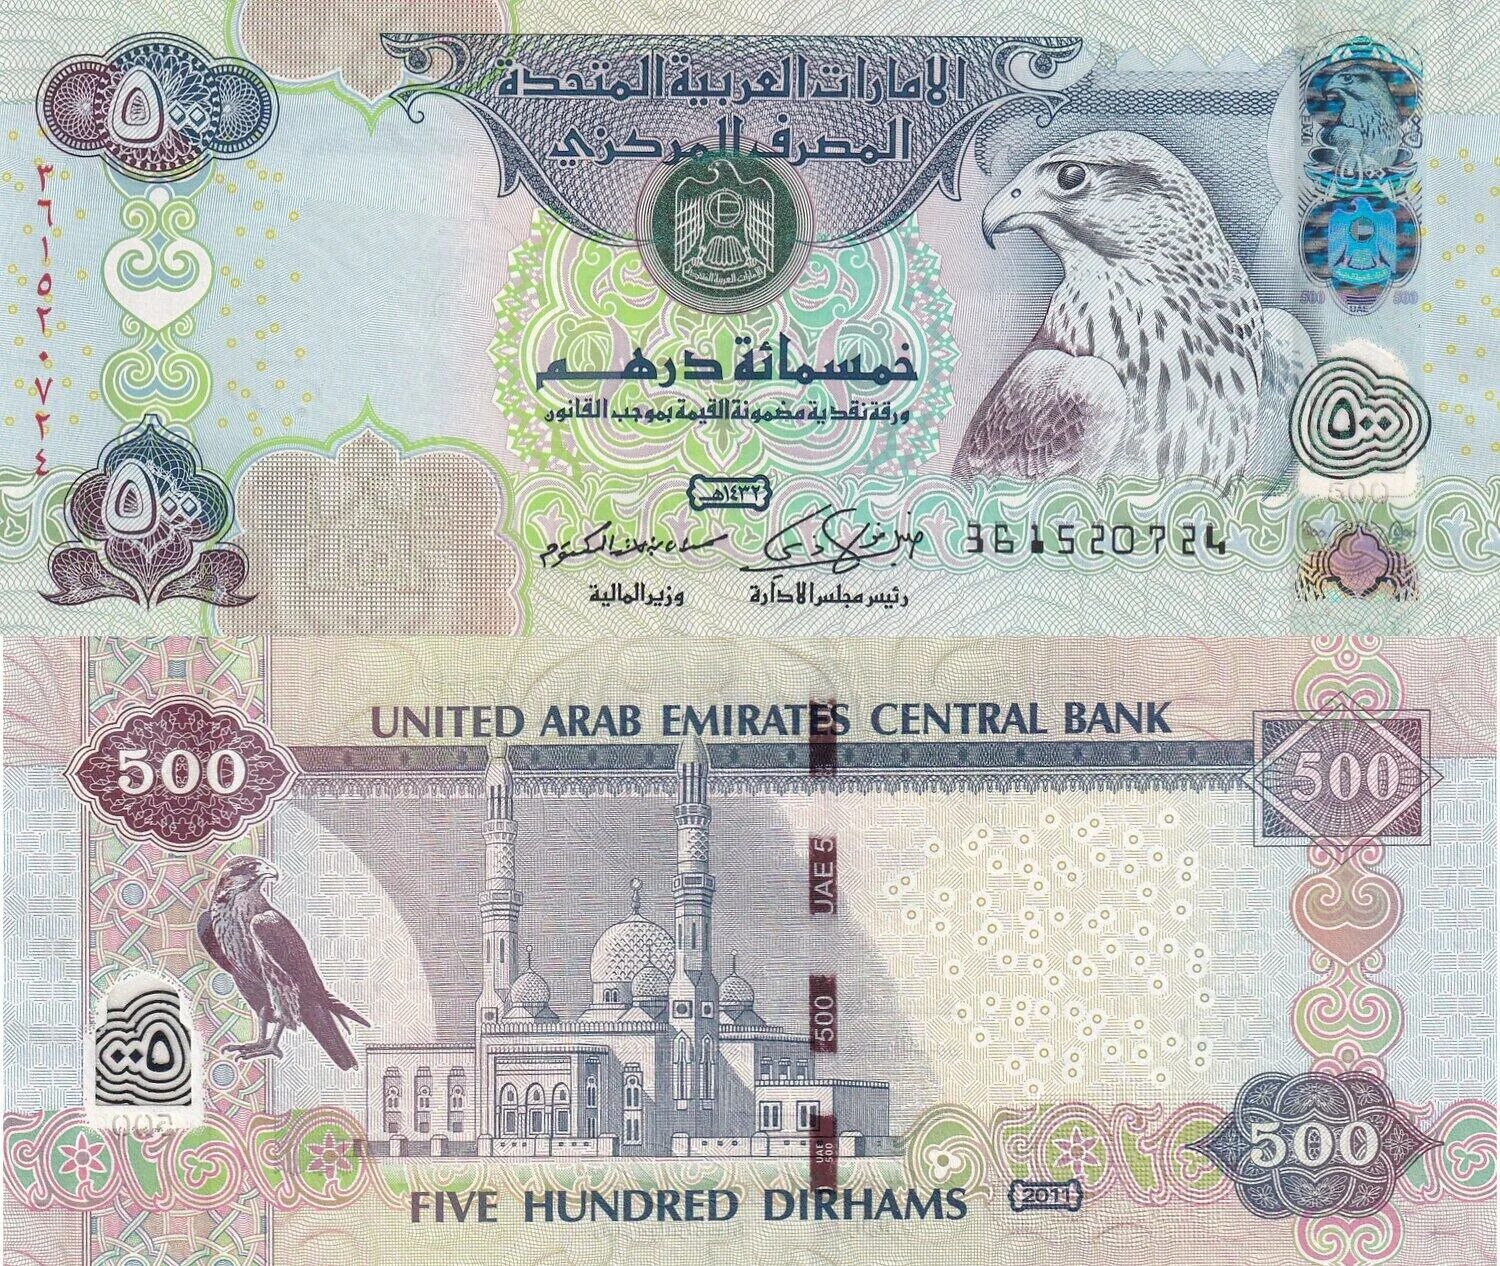 1000 Дирхам ОАЭ. Купюры Эмиратов. Дирхамы банкноты. Деньги арабских Эмиратов. Курс дирхам на сегодня калькулятор